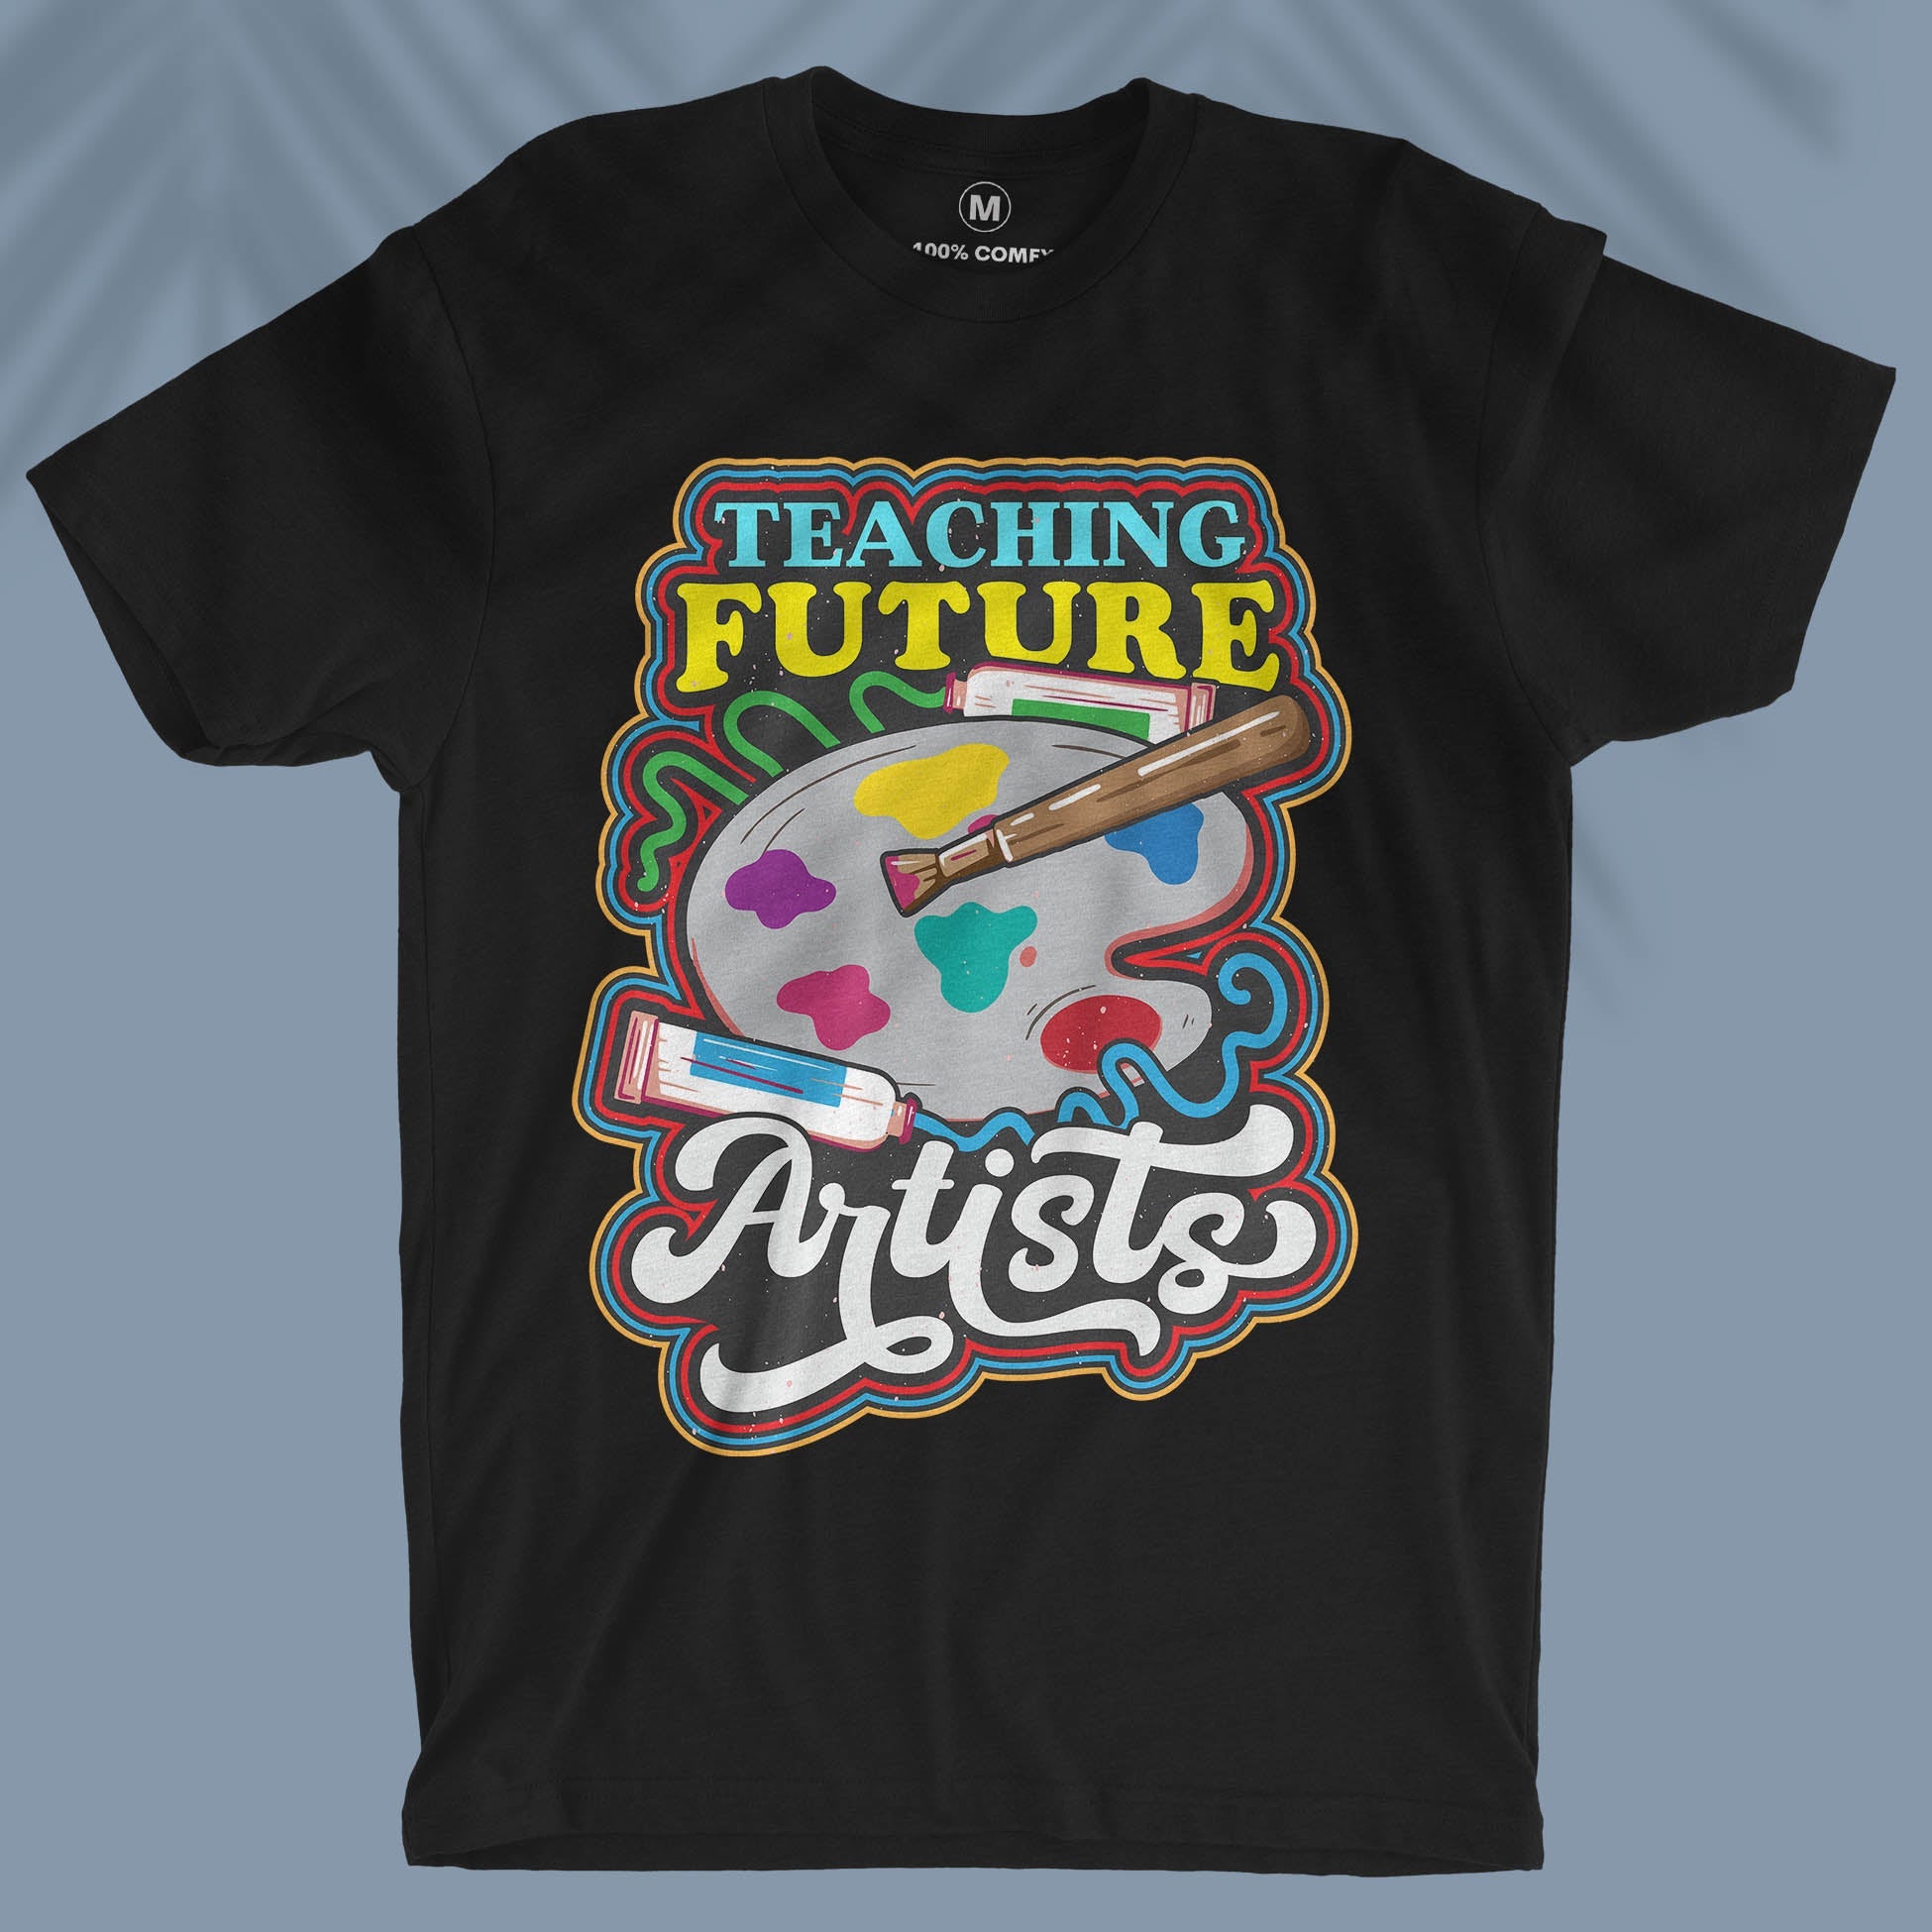 Teaching Future Artists  - Unisex T-shirt For Art Teachers